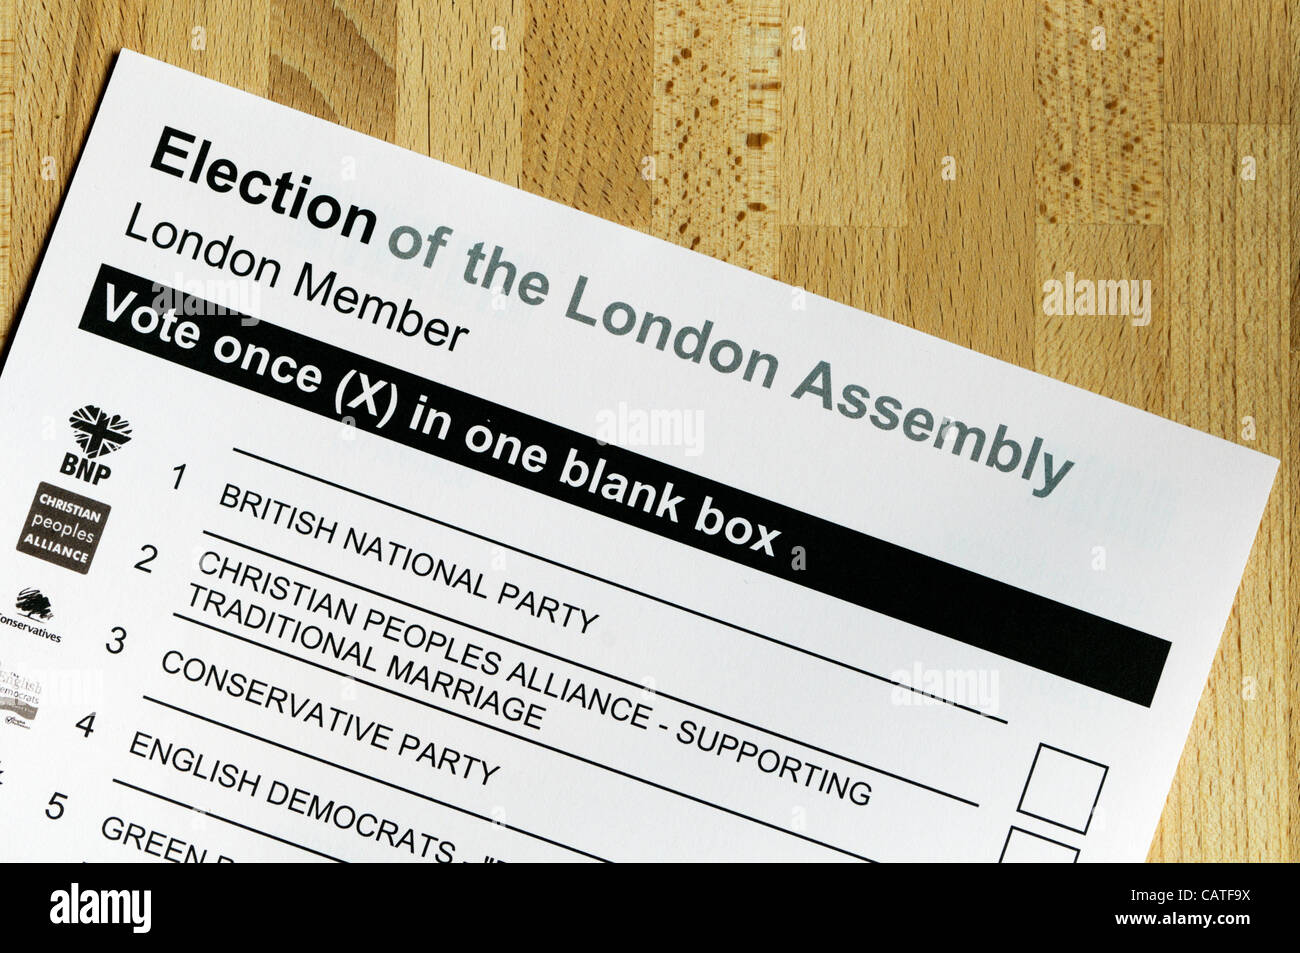 LONDON, UK, 20. April 2012, Kommunalwahlen sind am 3. Mai 2012 in England stattfinden. Dazu gehören auch die Wahl des Londoner Bürgermeister und der London Assembly.  Foto zeigt Stimmzettel für die Wahl der London Assembly. Stockfoto